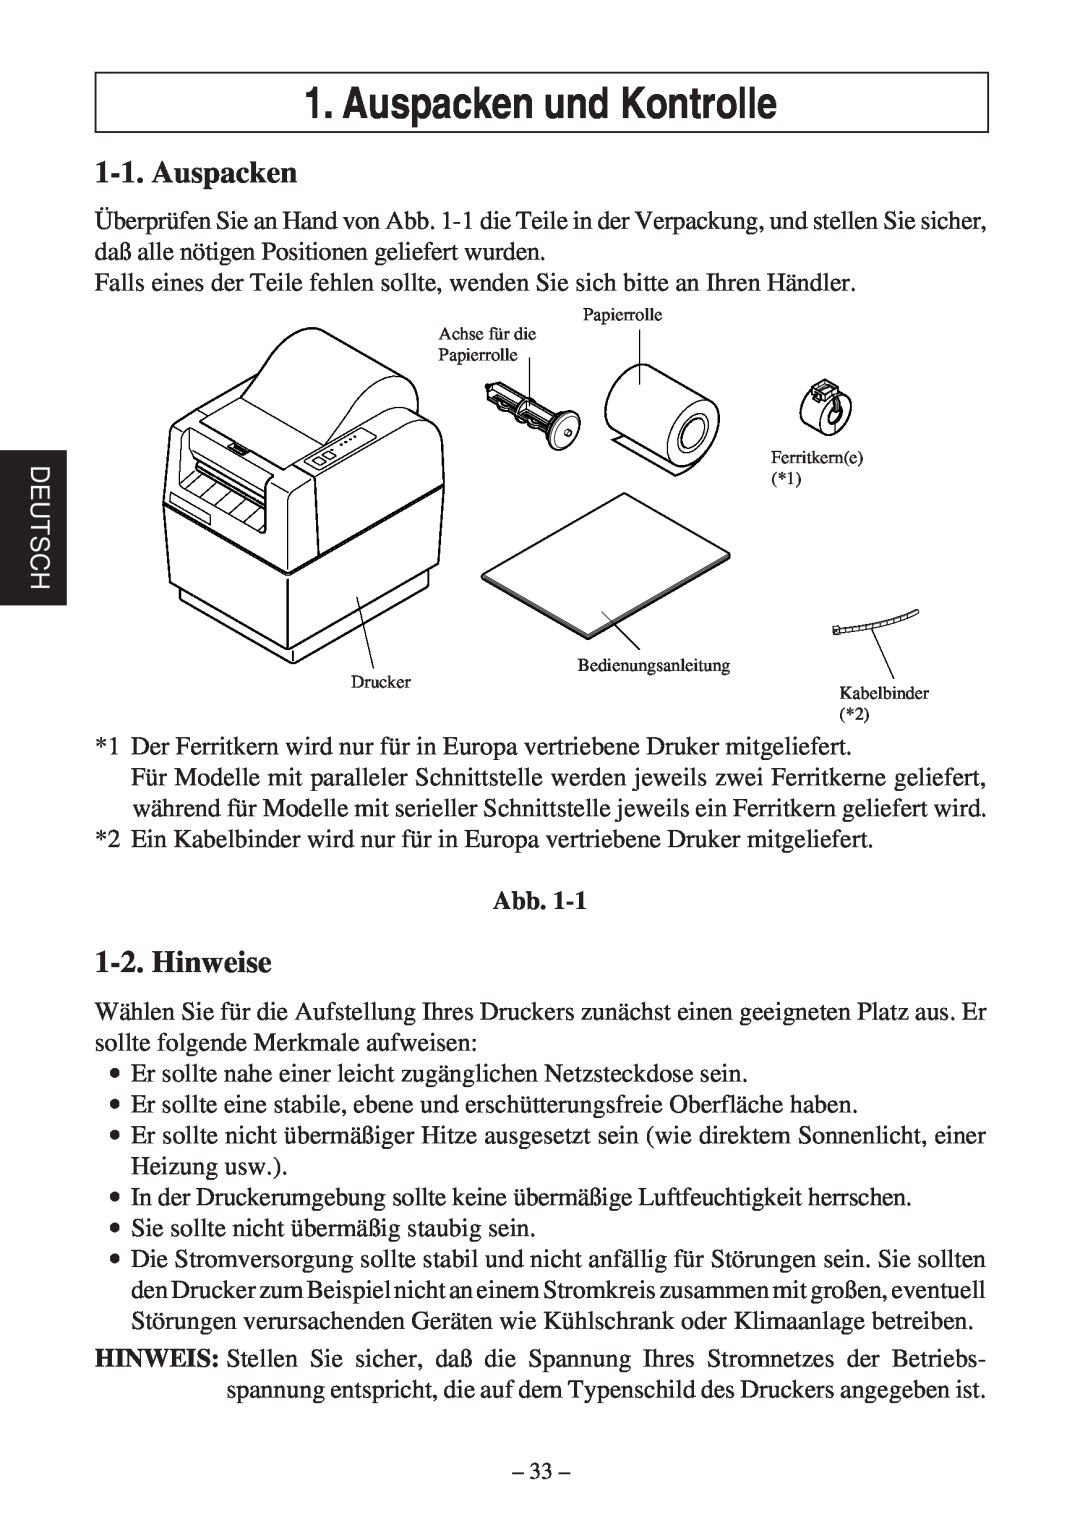 Star Micronics TSP400Z Series user manual Auspacken und Kontrolle, Hinweise, Deutsch 